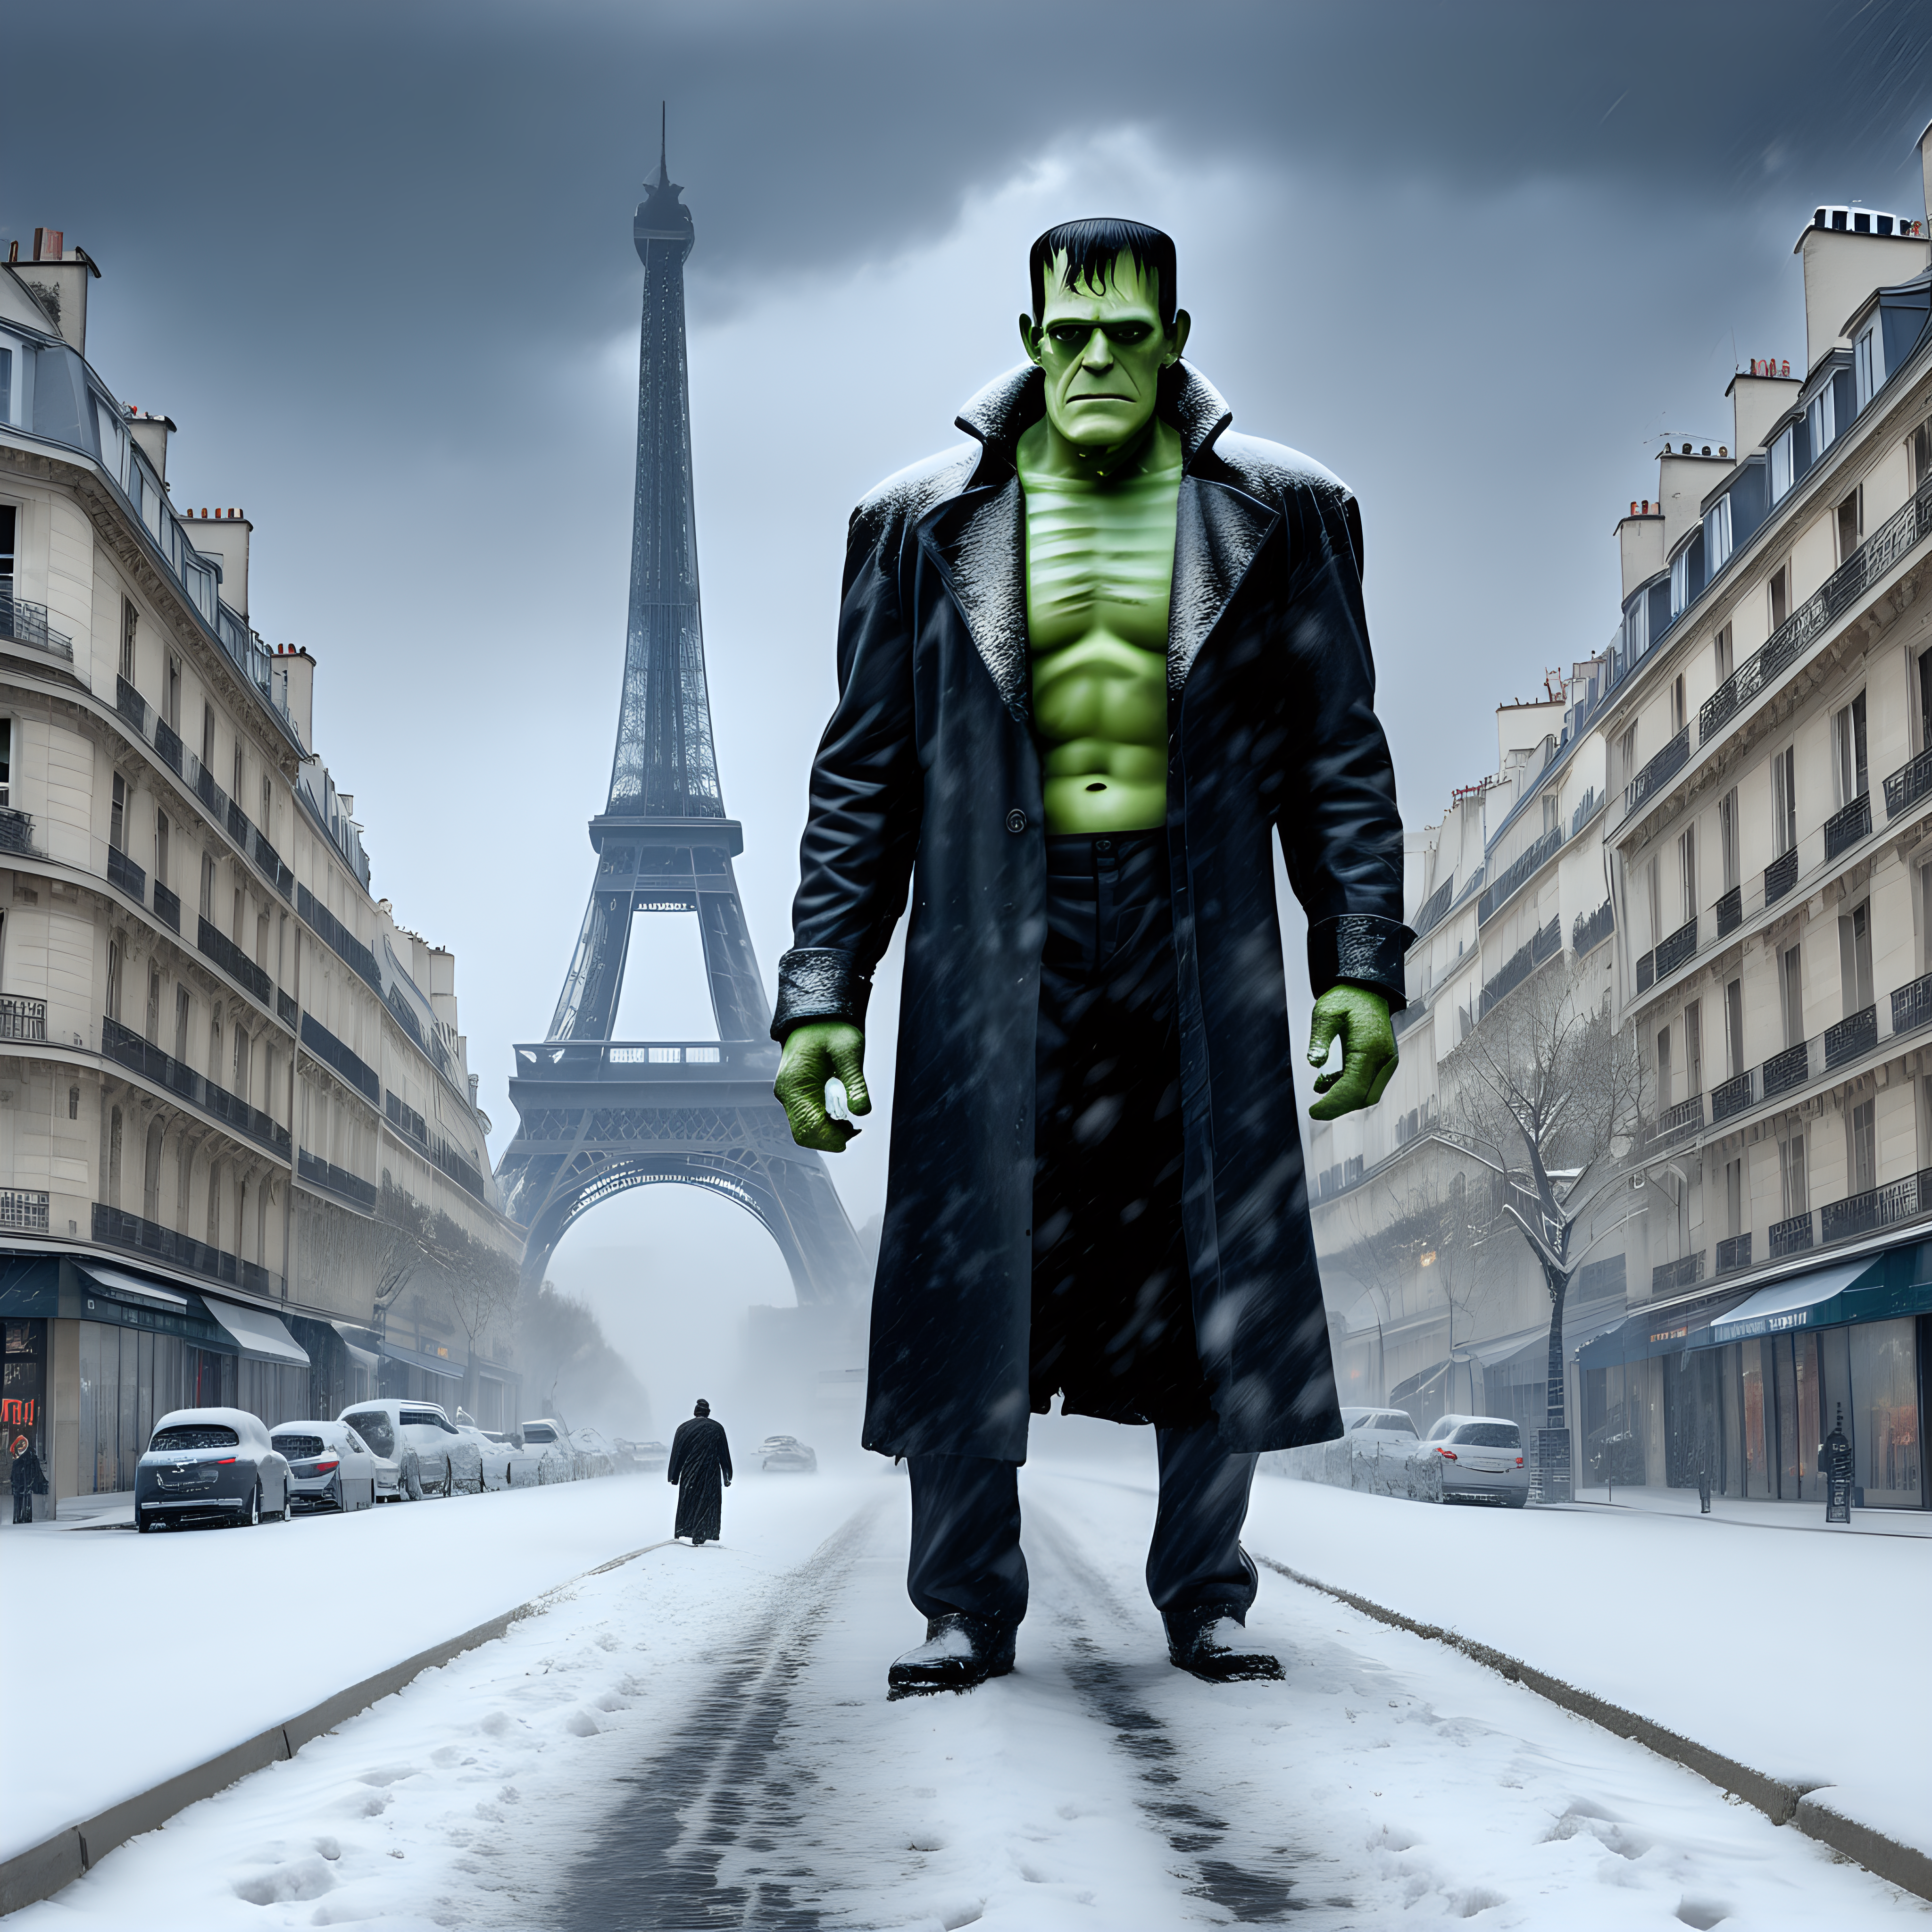 Frankenstein destroying Paris in winter snow storm